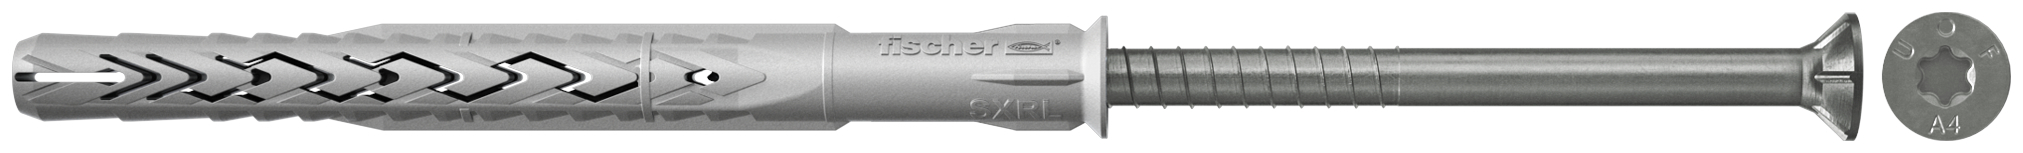 fischer Tasselli prolungati SXRL 8x140 T A4 (1 Pz.) Tassello prolungato in nylon con marcatura CE con vite premontata in acciaio inox A4, T.S.P. impronta torx fie3167